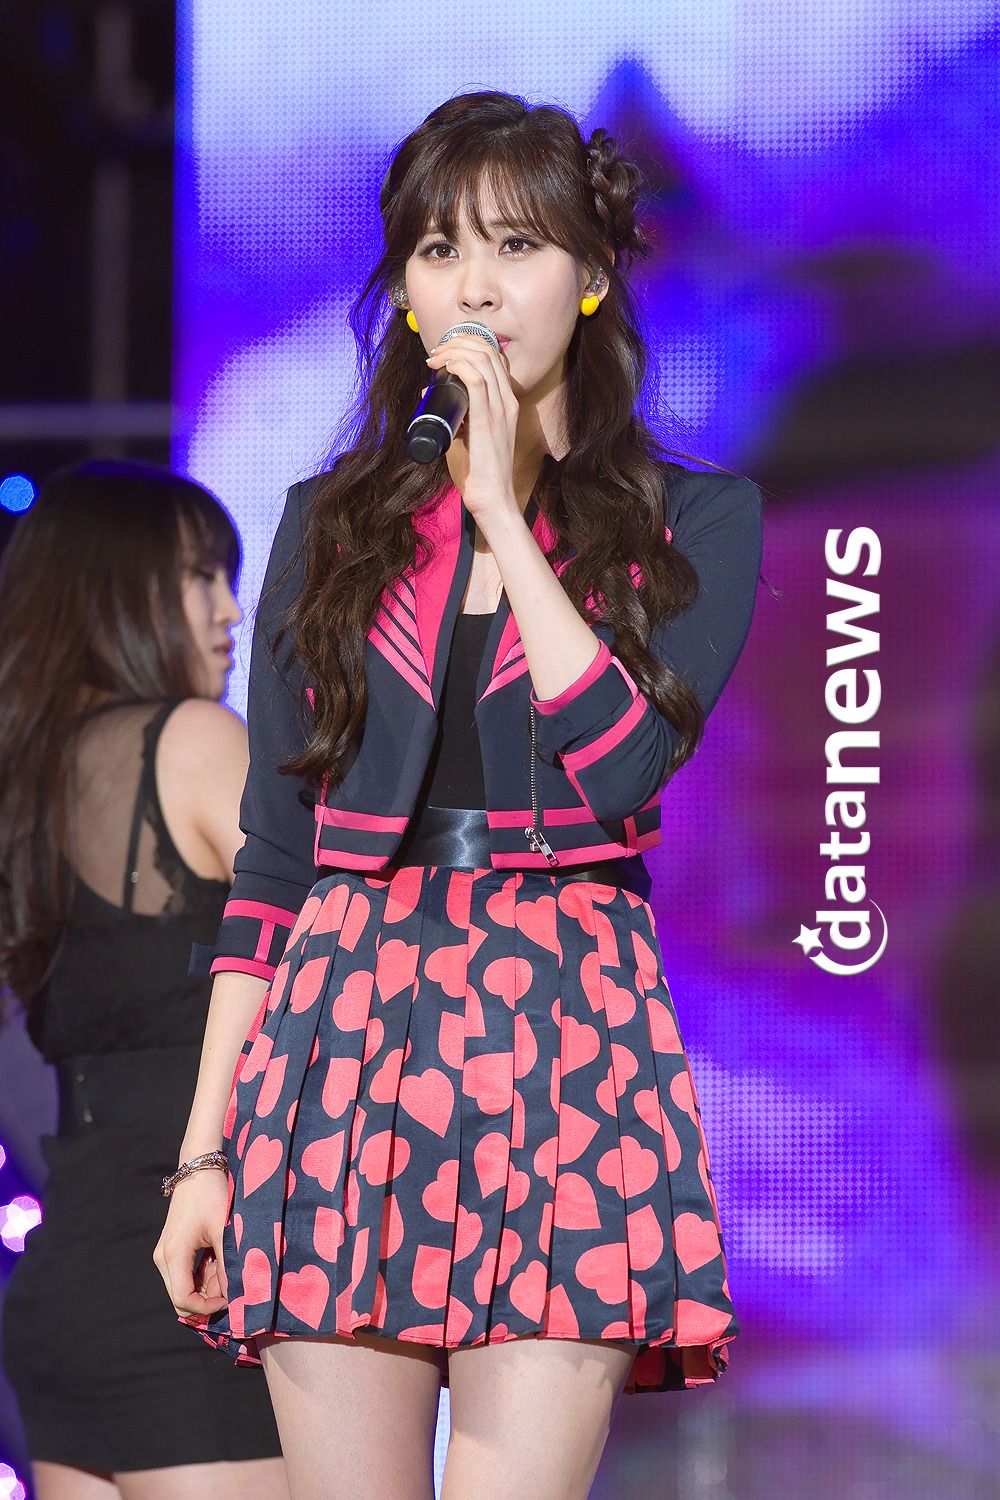 [PIC][30-05-2013]TaeTiSeo biểu diễn tại "PyeongTaek Concert" vào tối nay - Page 4 2133BB3D51AC246718841E